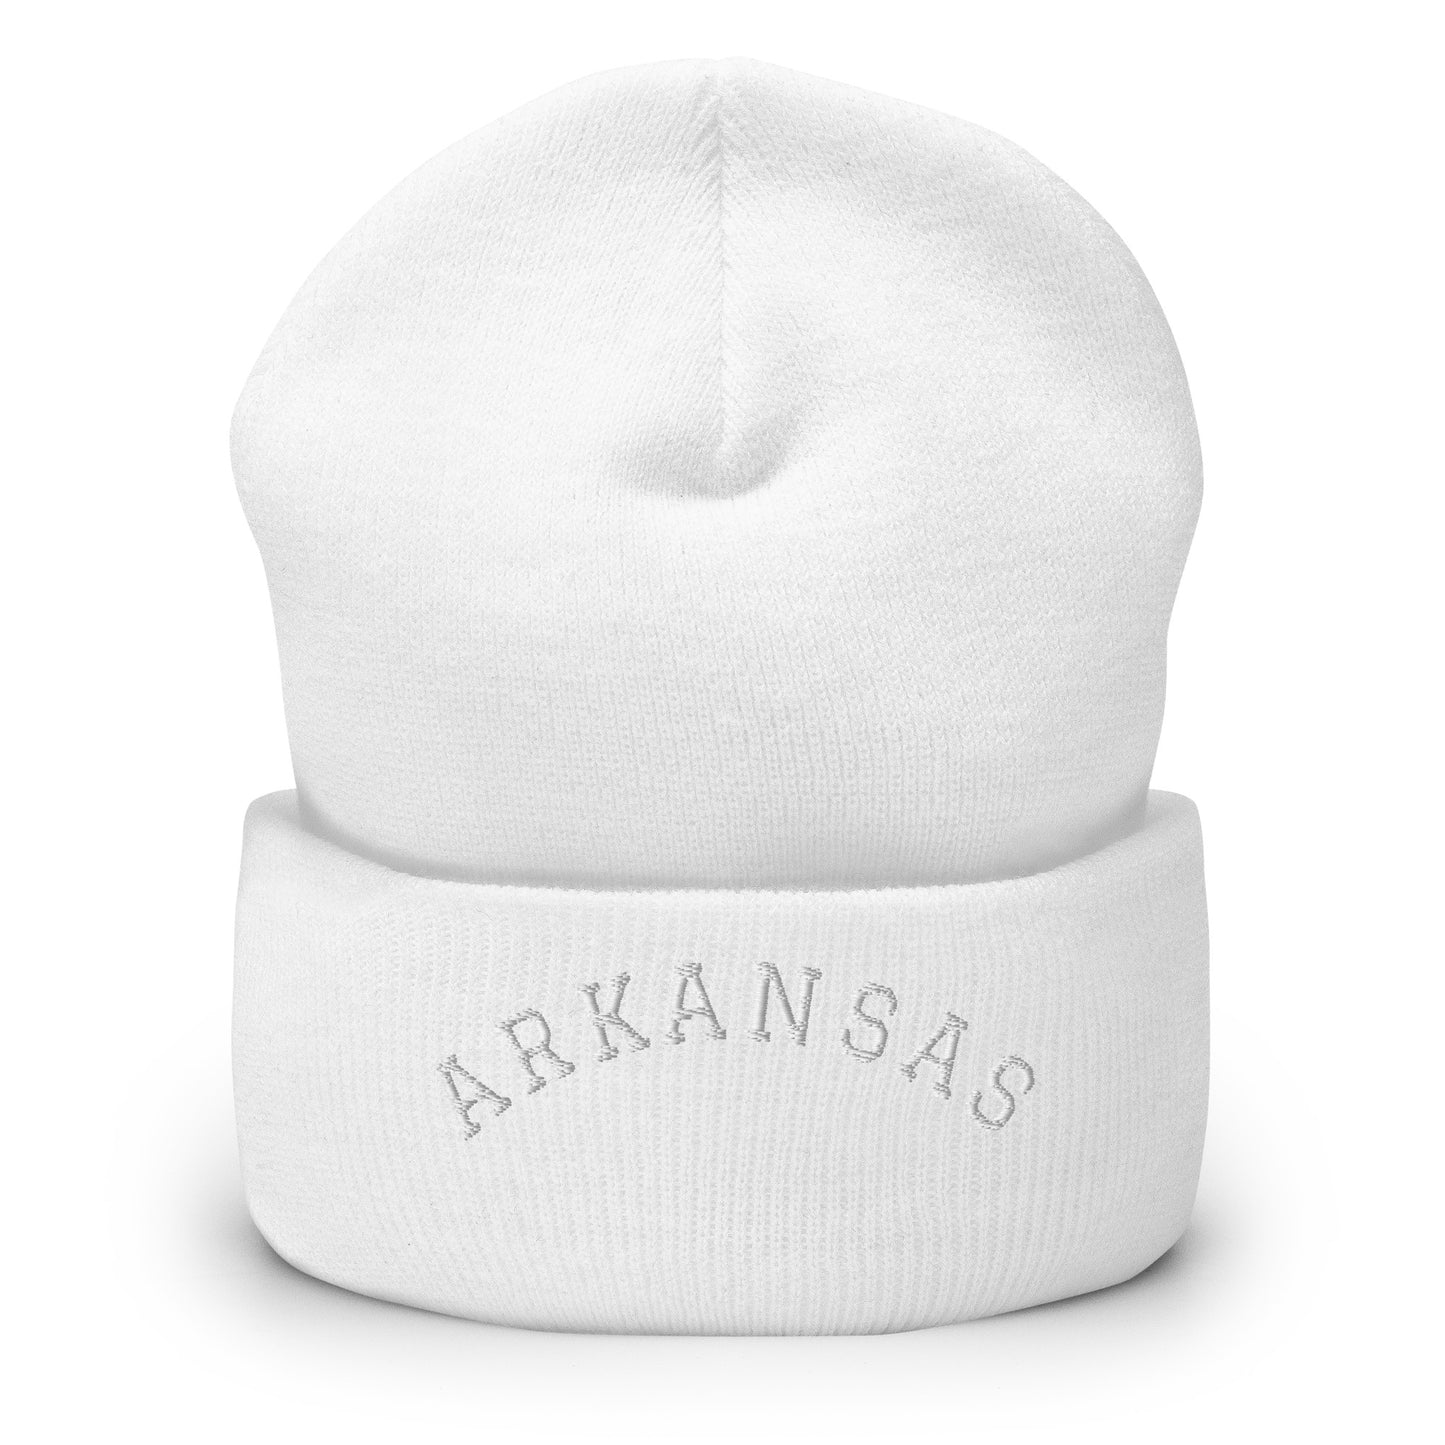 Arkansas Arch Cuffed Beanie Hat